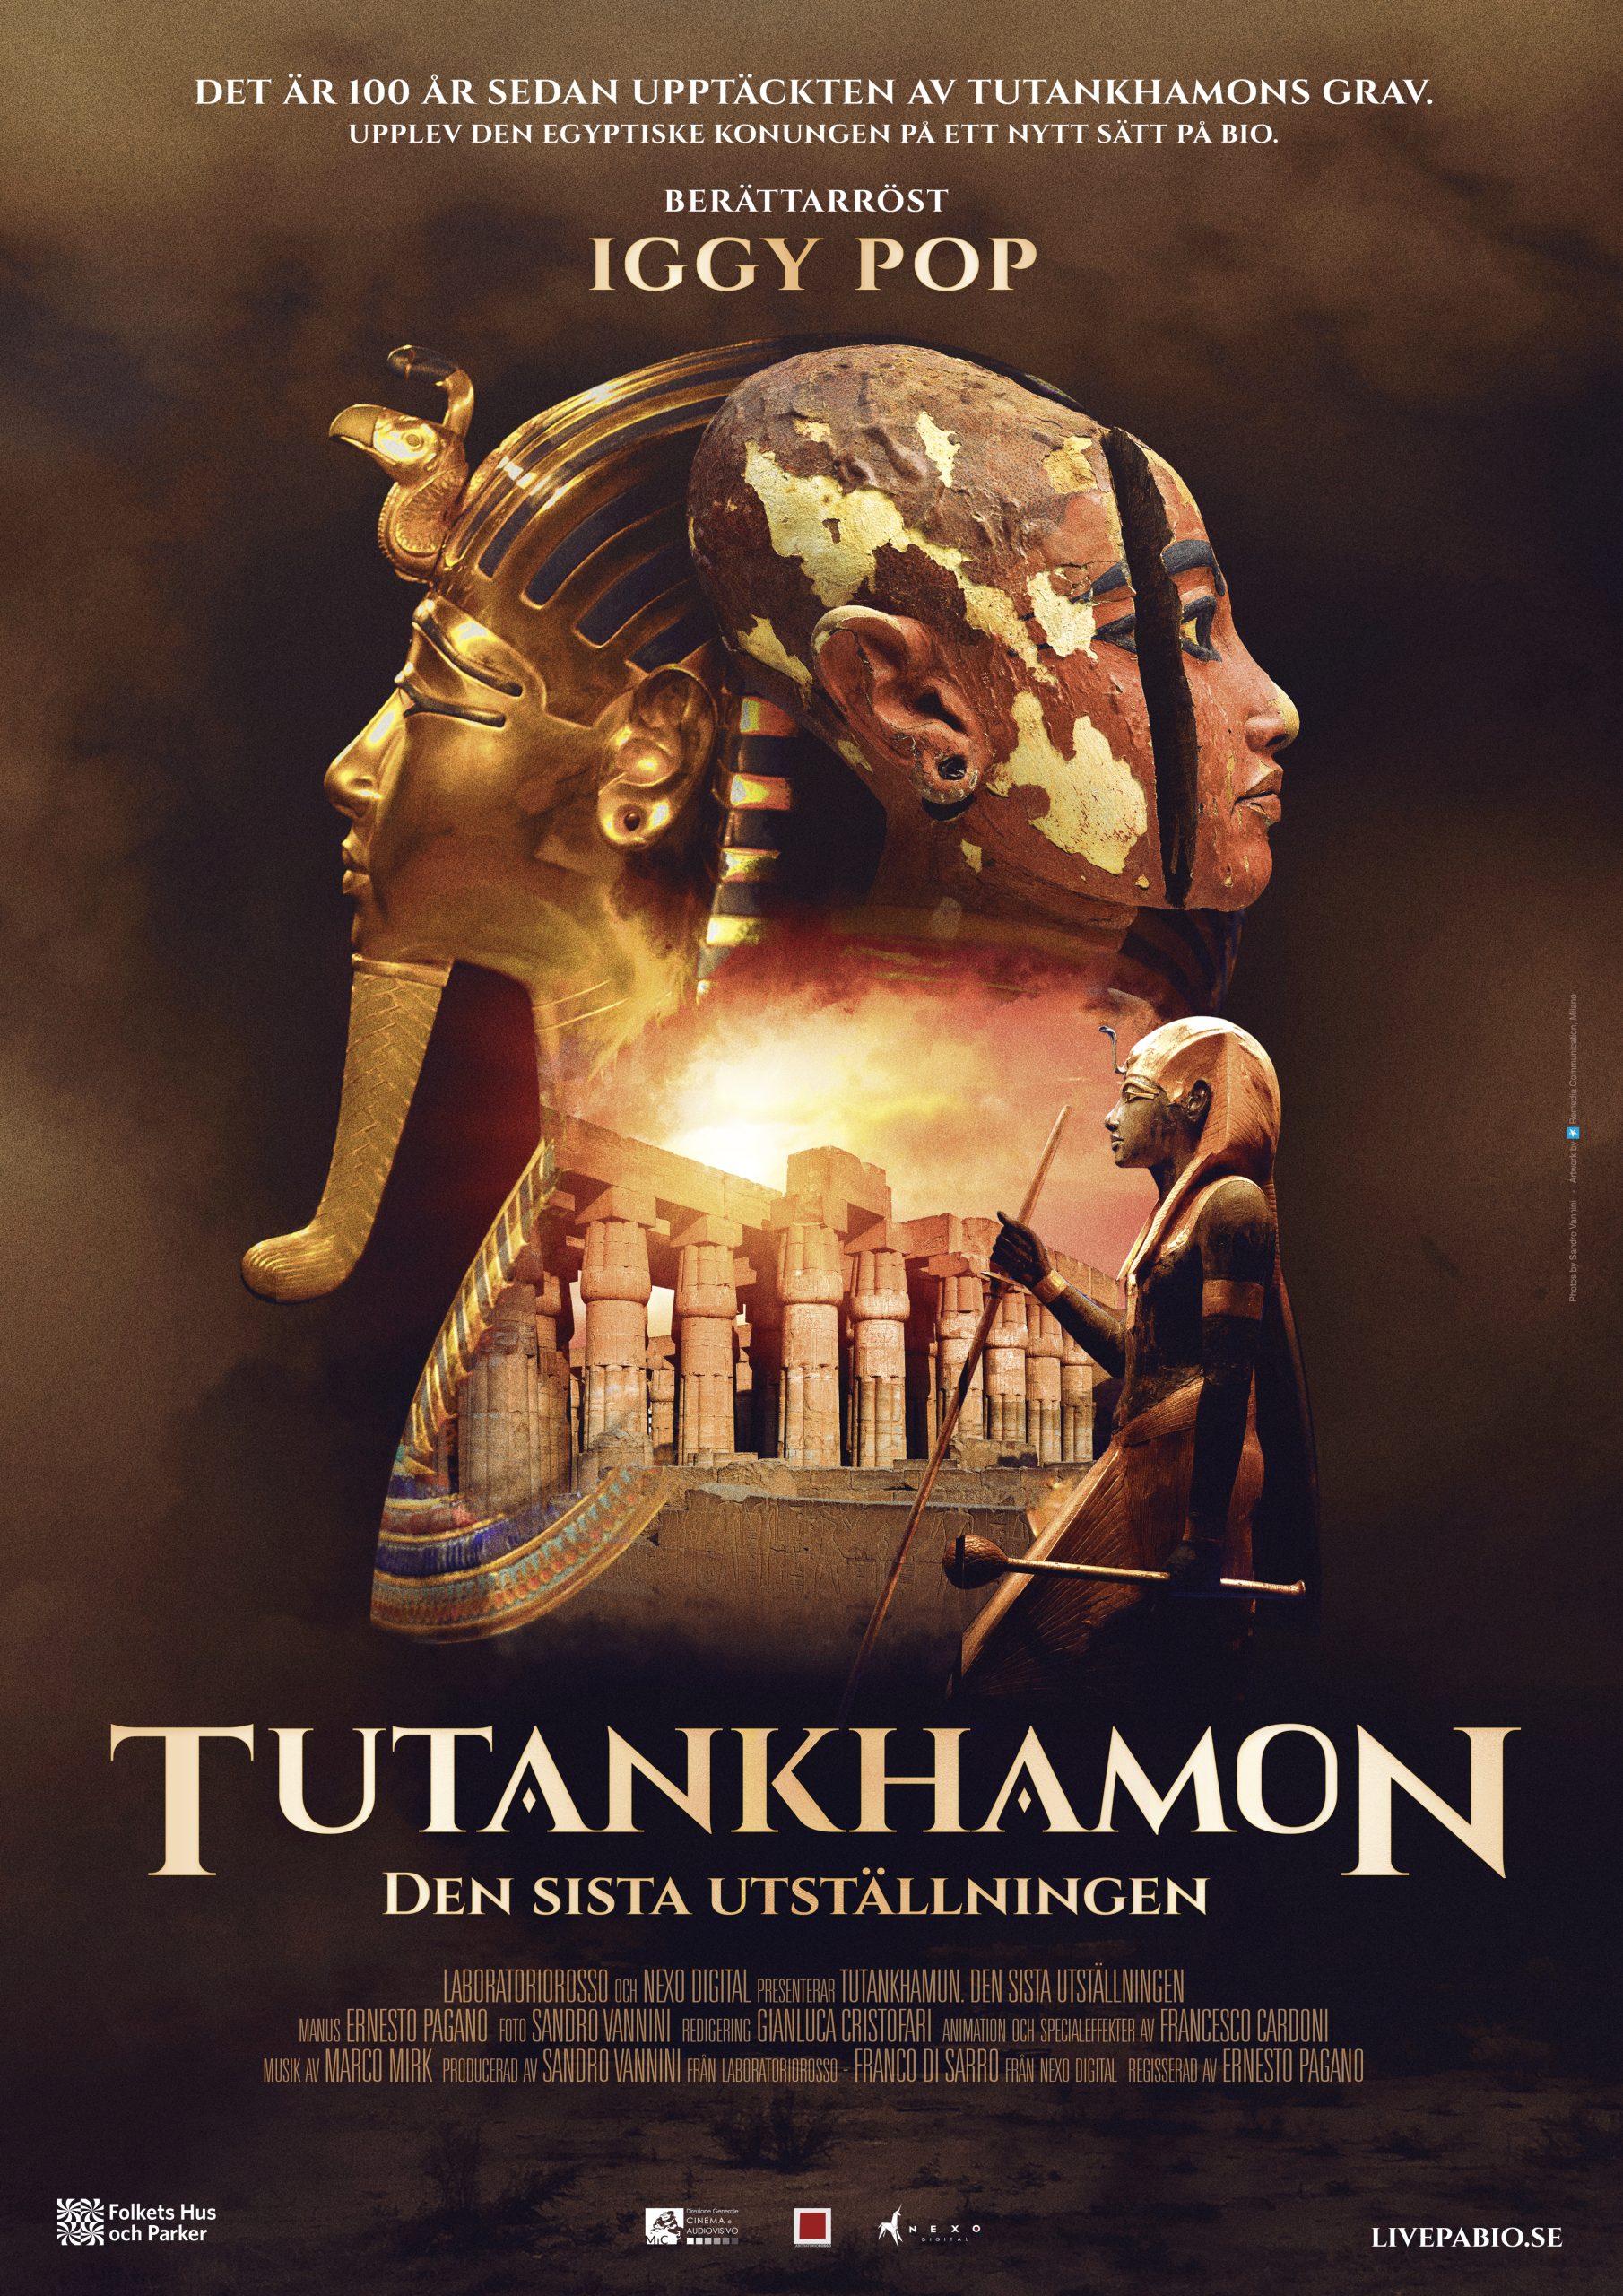 You are currently viewing Tutankhamon – Den sista utställningen